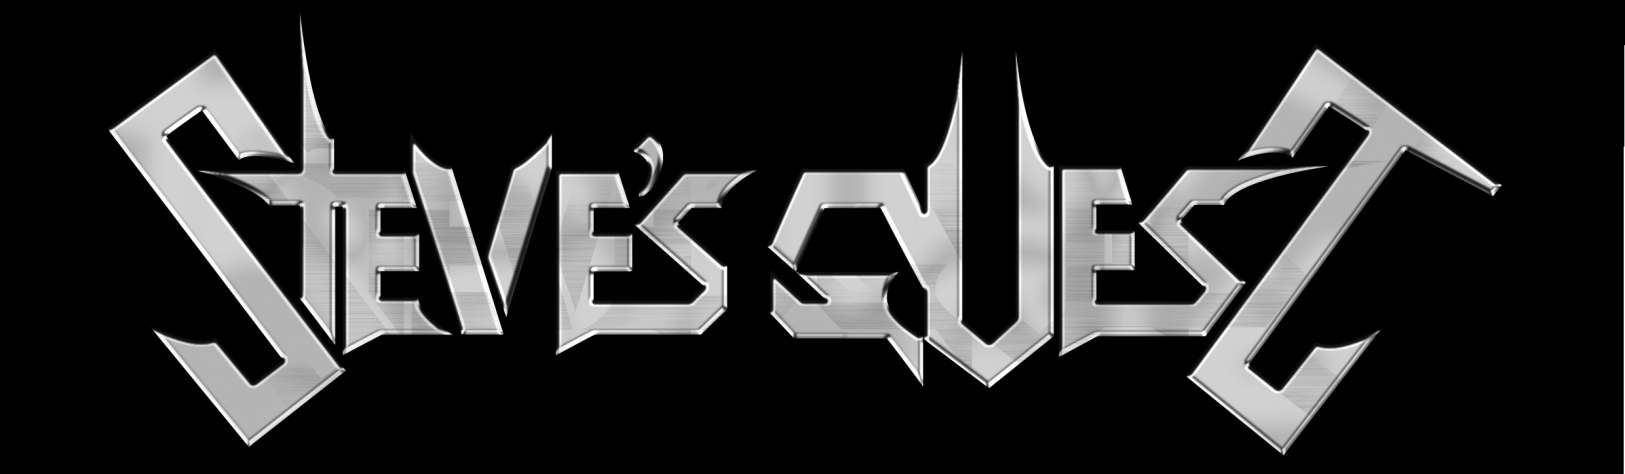 stevesquest Logo